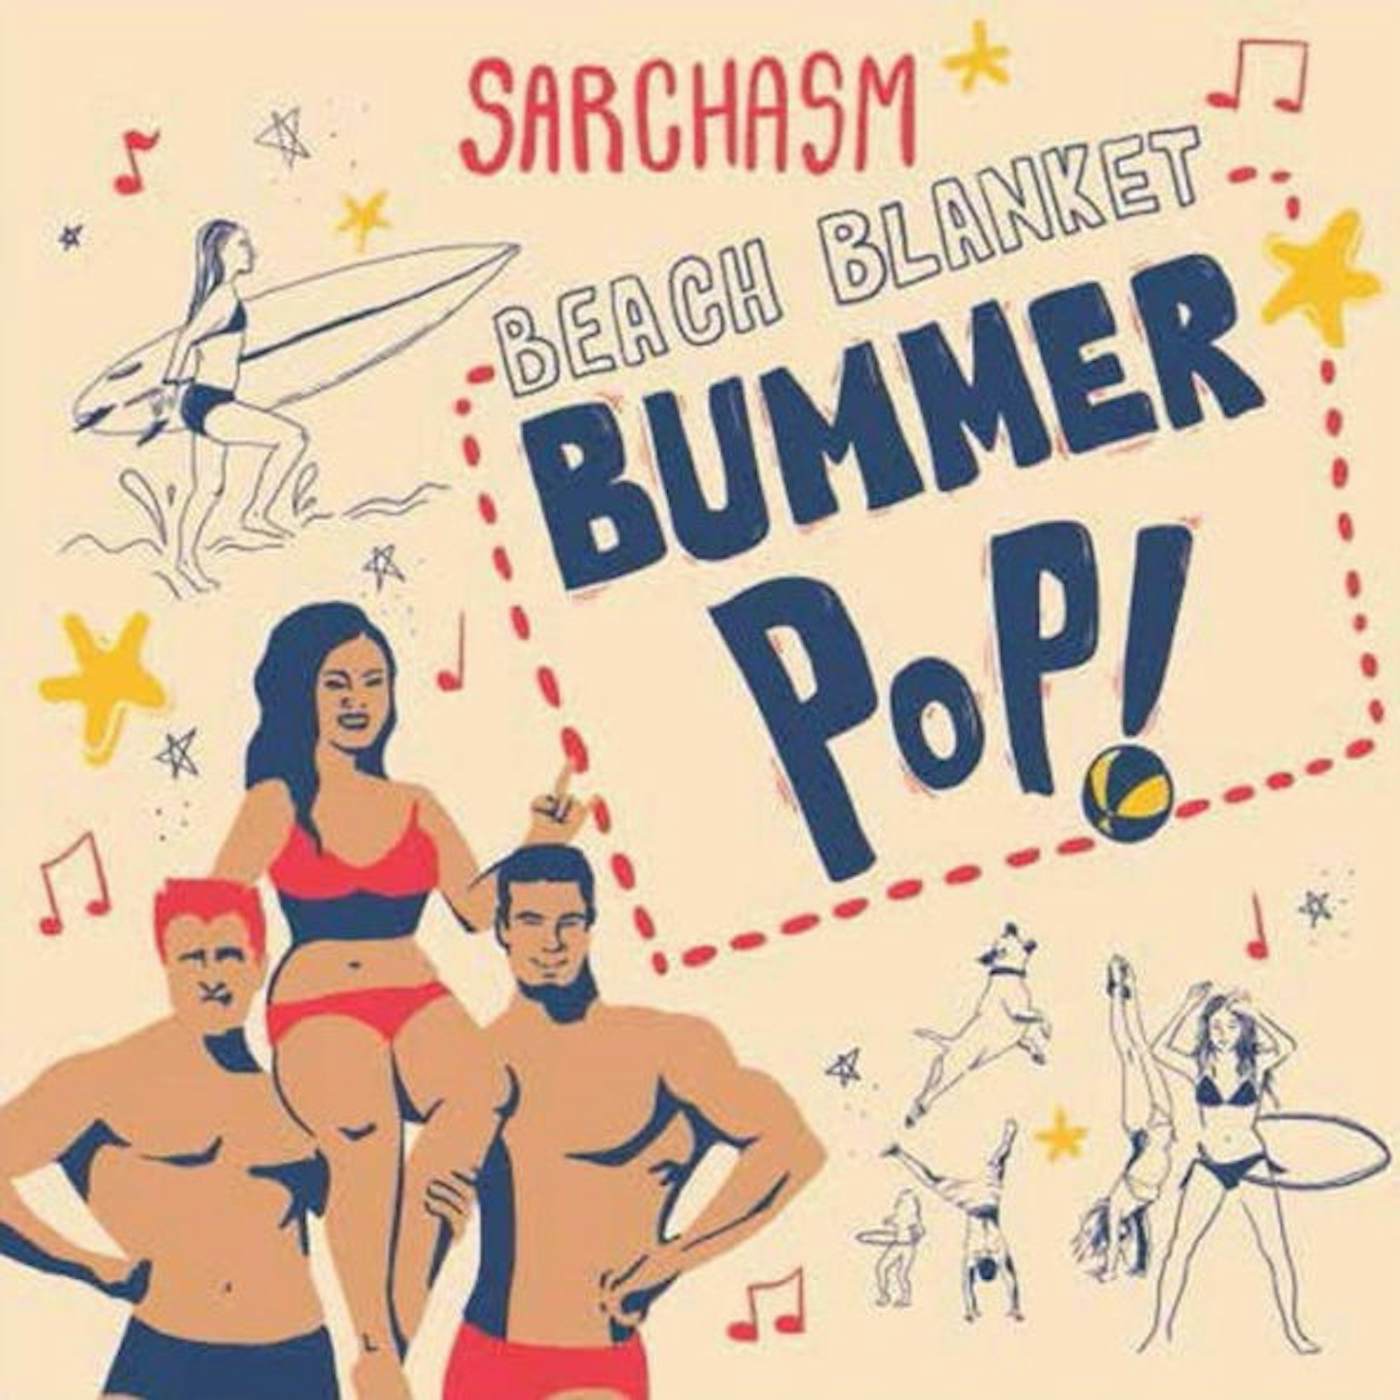 Sarchasm Beach blanket bummer pop Vinyl Record